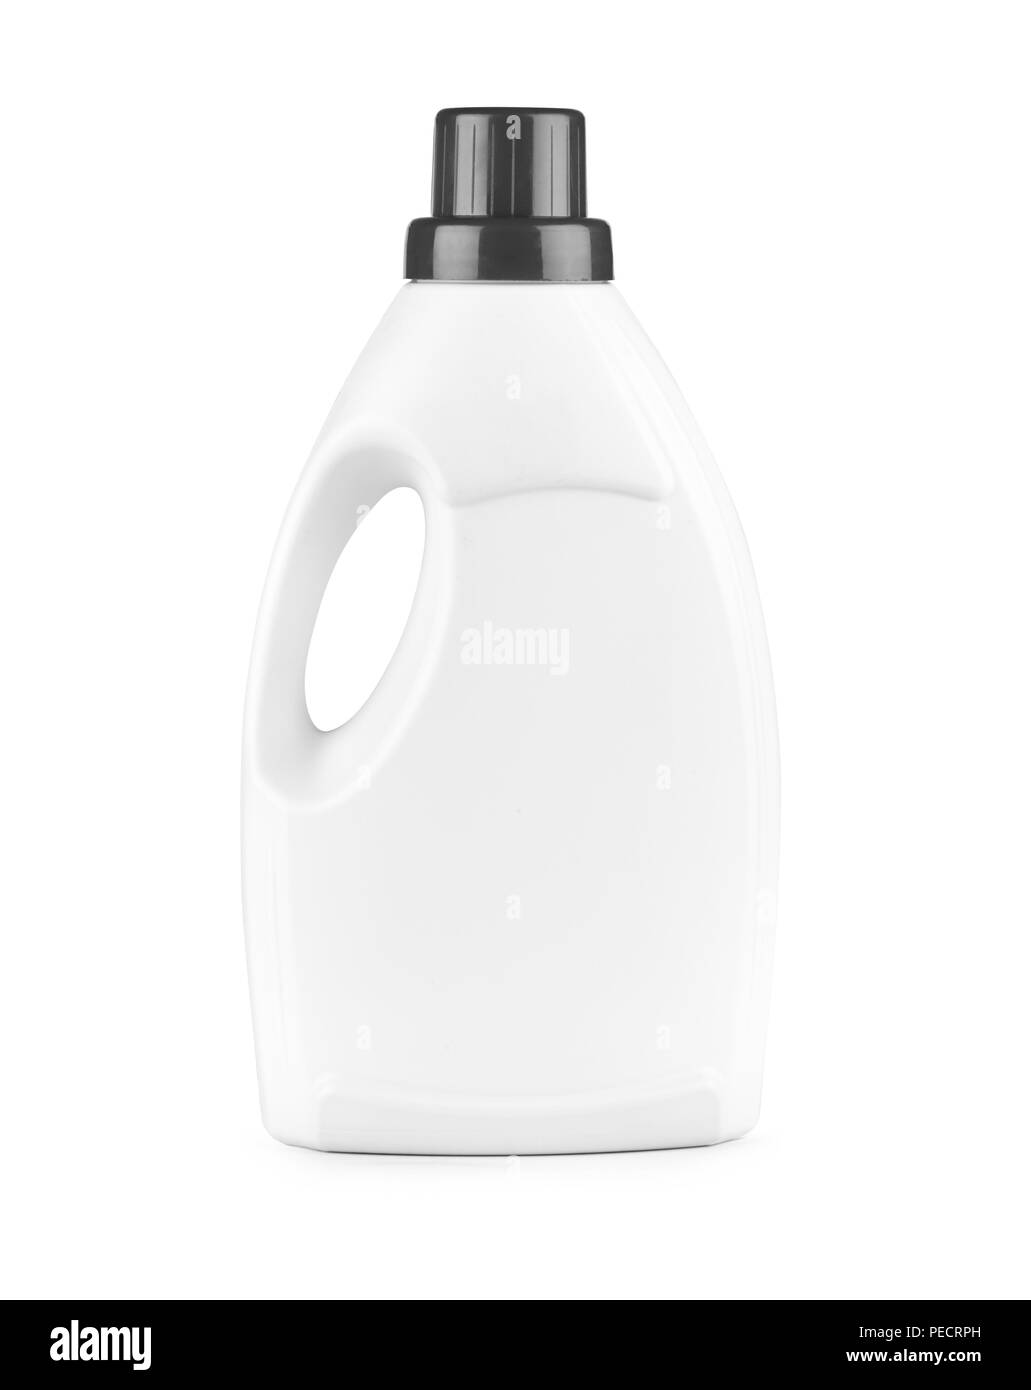 Botella de plástico blanco para detergente líquido, agente de limpieza, lejía ni suavizante. Maqueta del paquete. Foto de stock